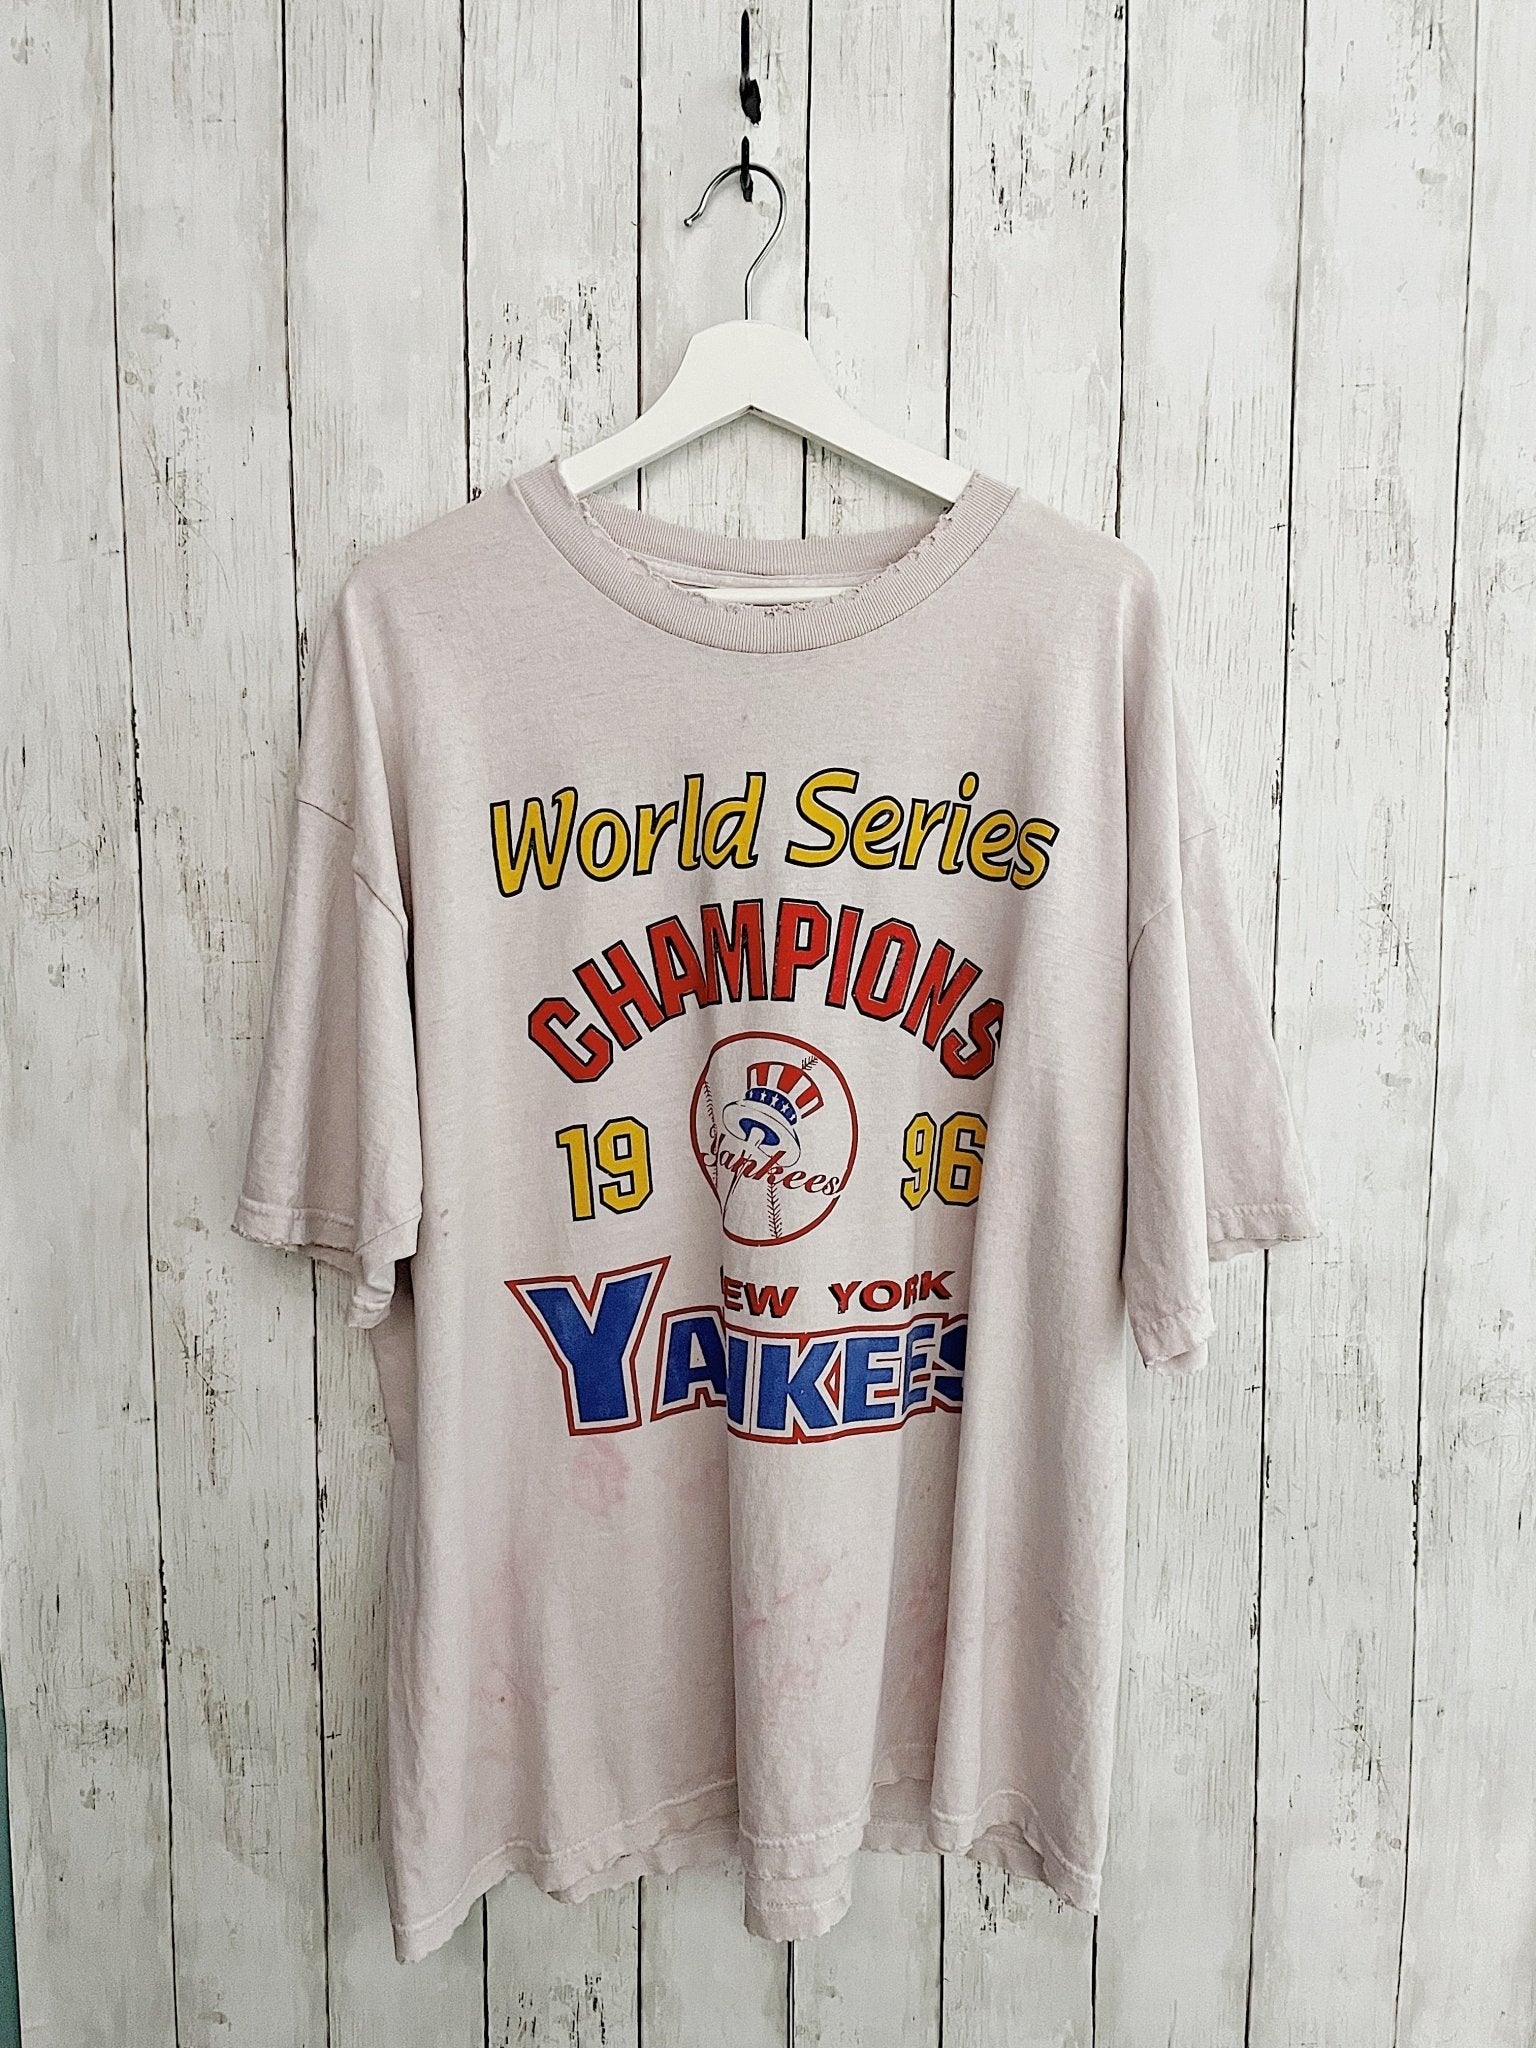 ny yankees vintage t shirts